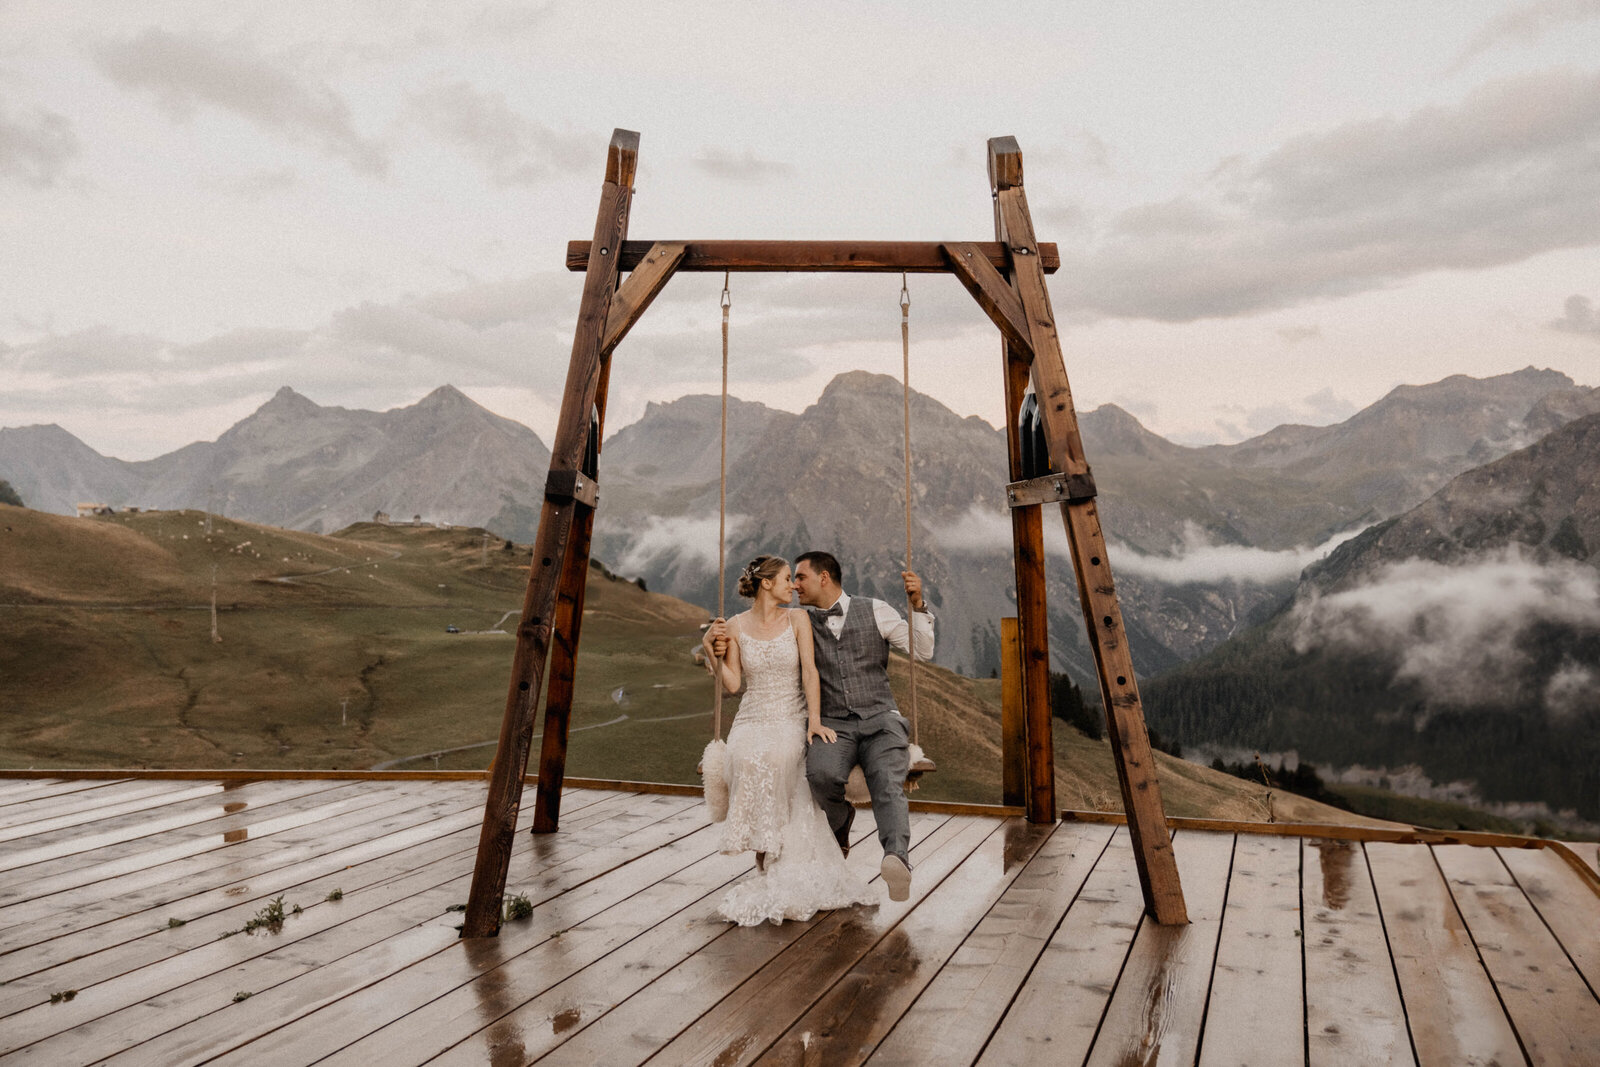 Hochzeitsfotos-Bündnerland-Hochzeitsshooting-in-den-Bergen-authentische-Hochzeitsfotos-natürliche-Hochzeitsfotos-Hochzeitsfotograf-professionelle-Hochzeitsfotos-Schweiz-Stories-by-Jane88